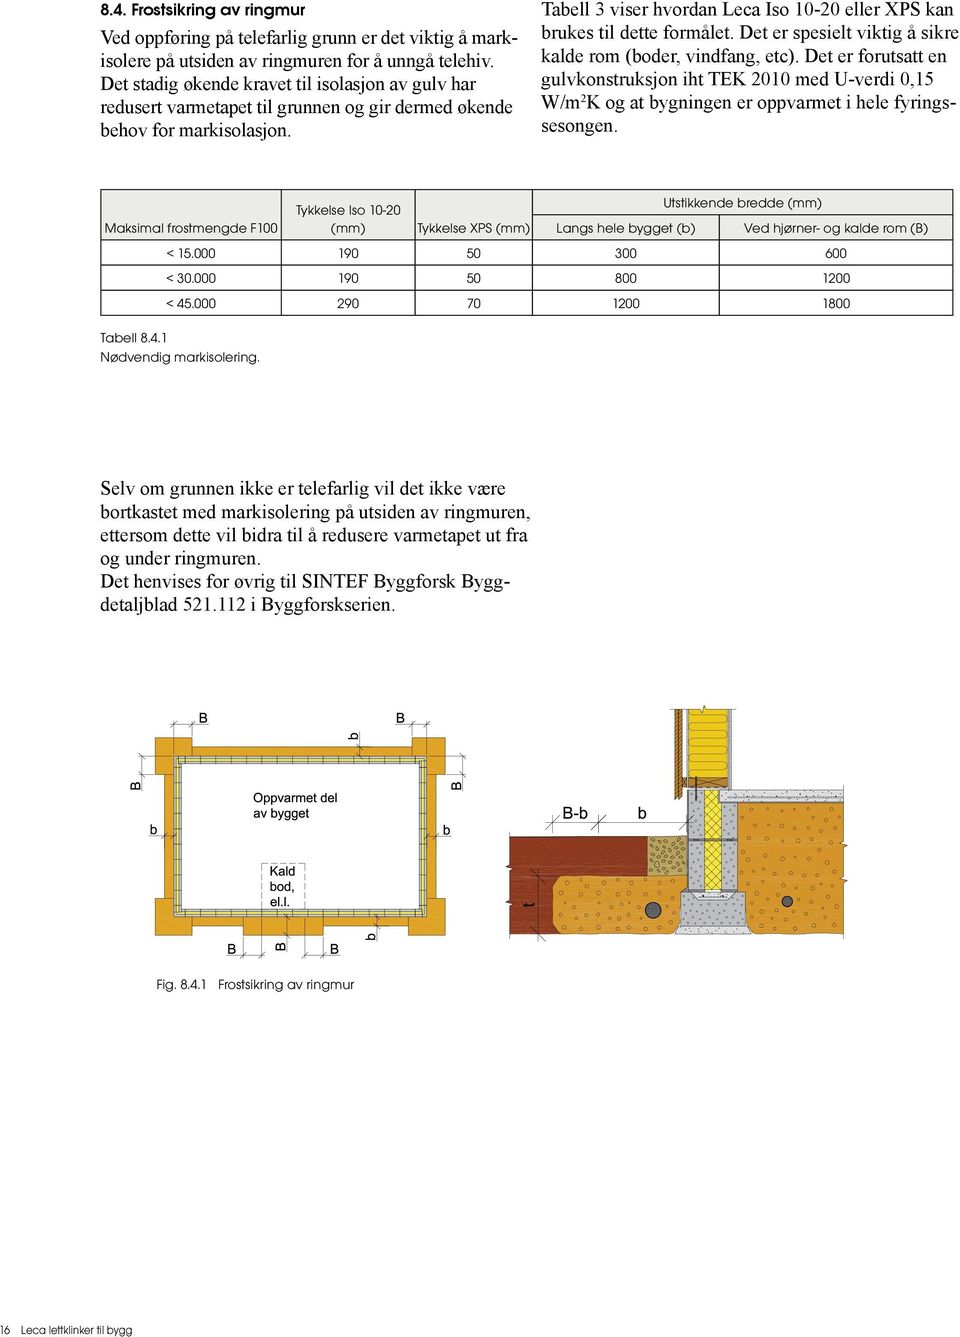 Tabell 3 viser hvordan Leca Iso 10-20 eller XPS kan brukes til dette formålet. Det er spesielt viktig å sikre kalde rom (boder, vindfang, etc).